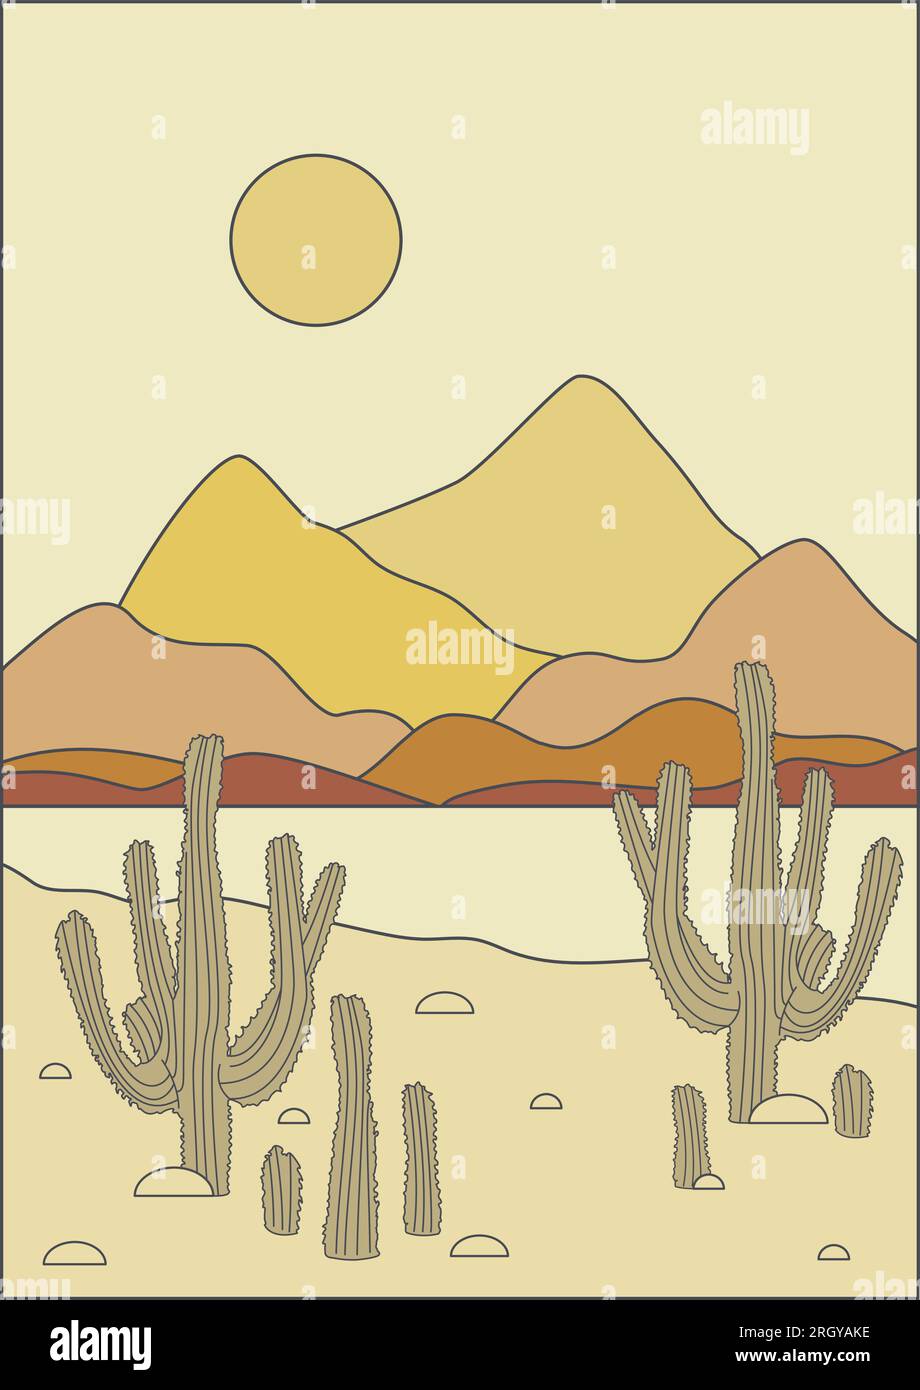 Ästhetische Wüstenlandschaft mit Kaktusbusch-Illustration Stock Vektor